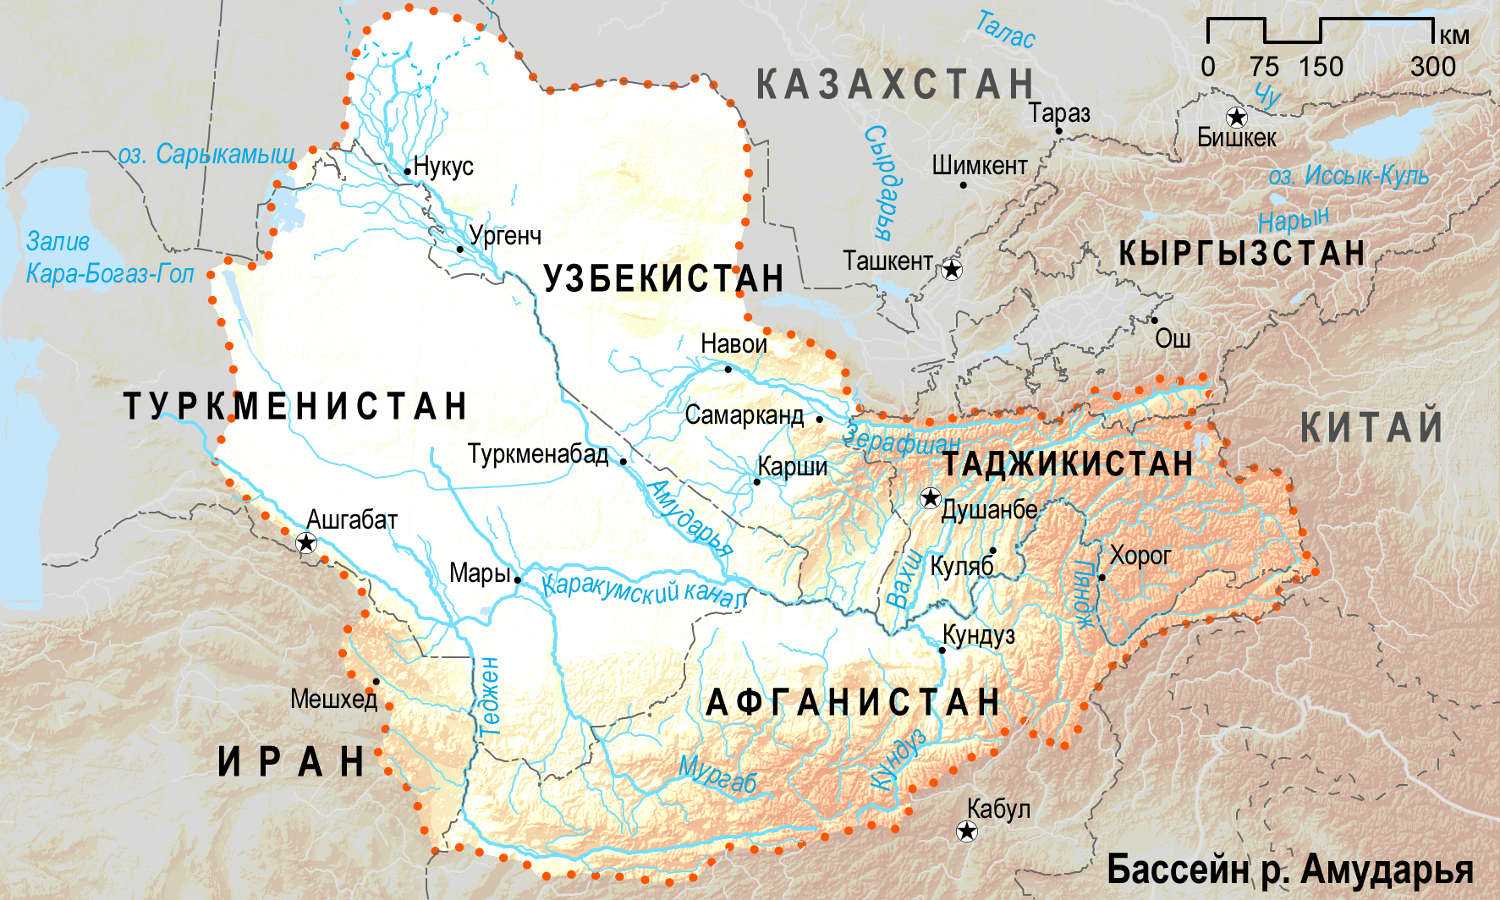 Рельеф средней азии. Реки Амударья и Сырдарья на карте. Бассейн реки Амударья и Сырдарья.